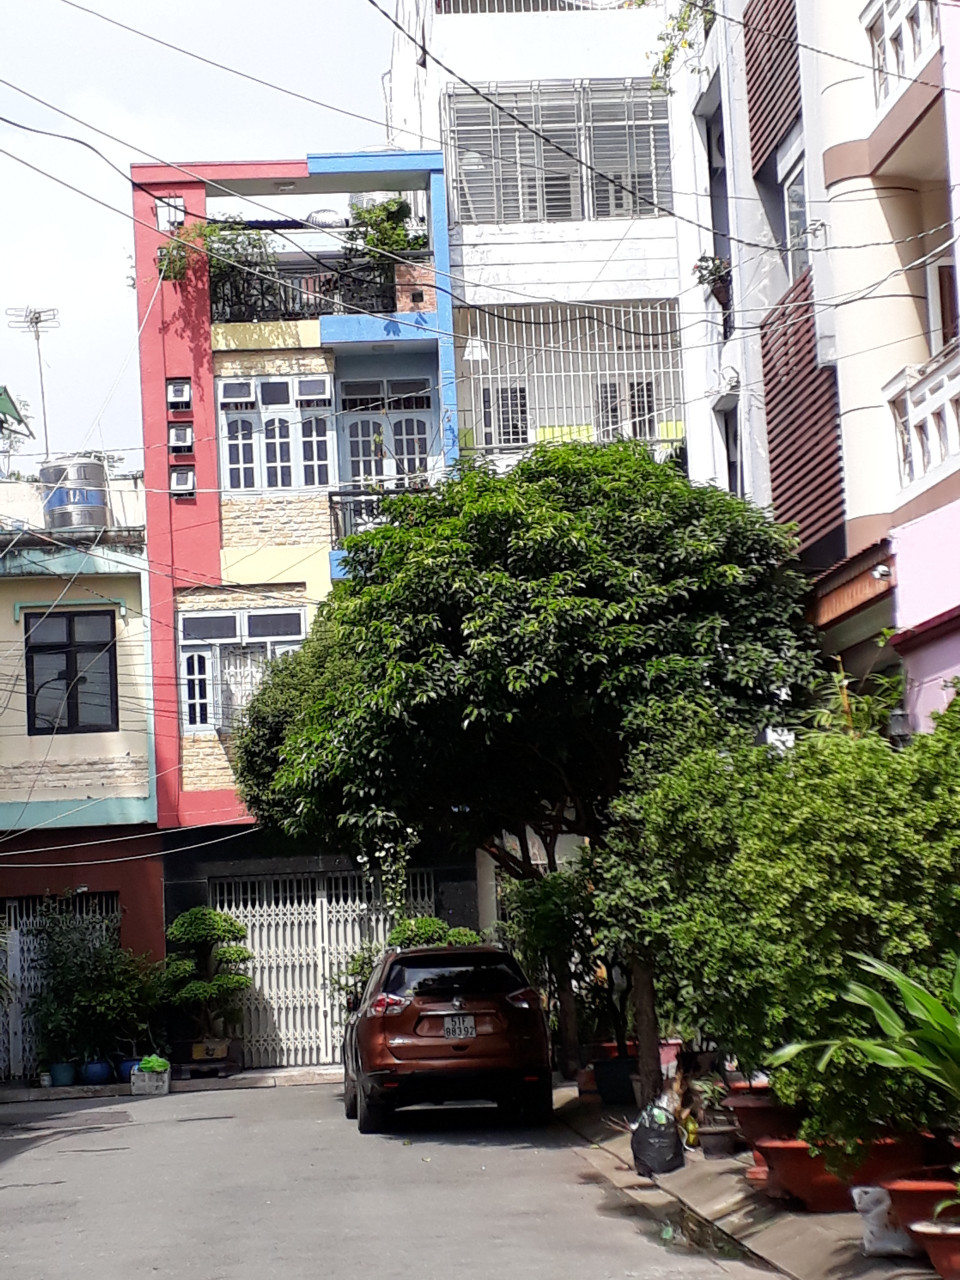  Bán nhà mặt tiền đường lớn An Dương Vương, P. 3, Quận 5. DT 4.2x15m, giá rẻ nhất thị trường